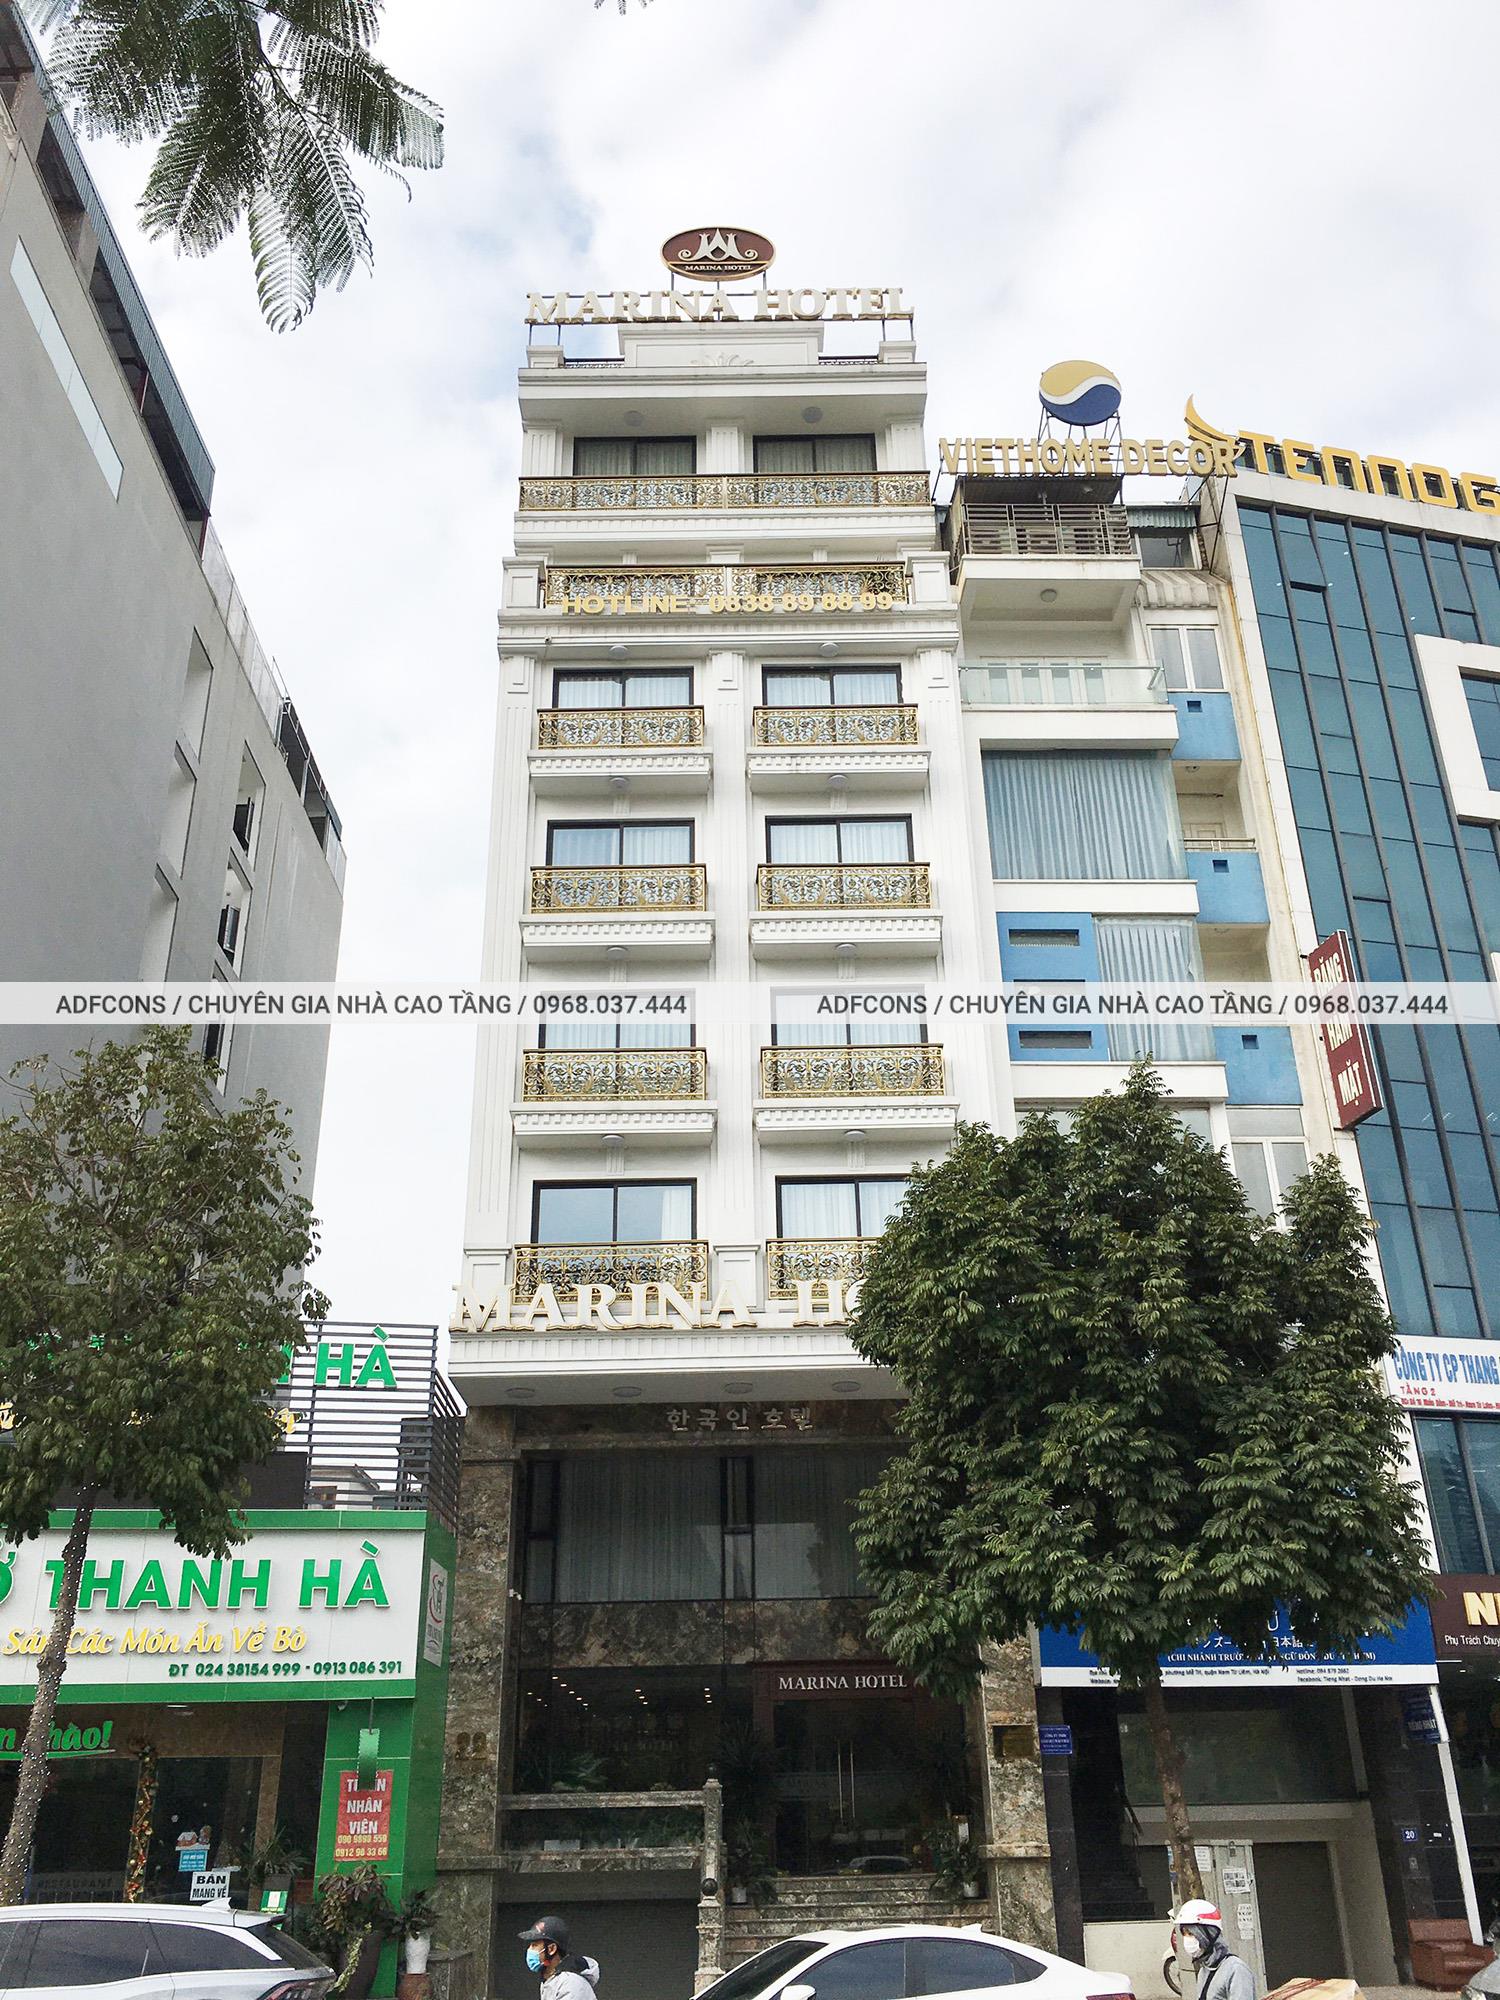 Chiêm ngưỡng khách sạn Marina Hotel hiện đại tại Hà Nội